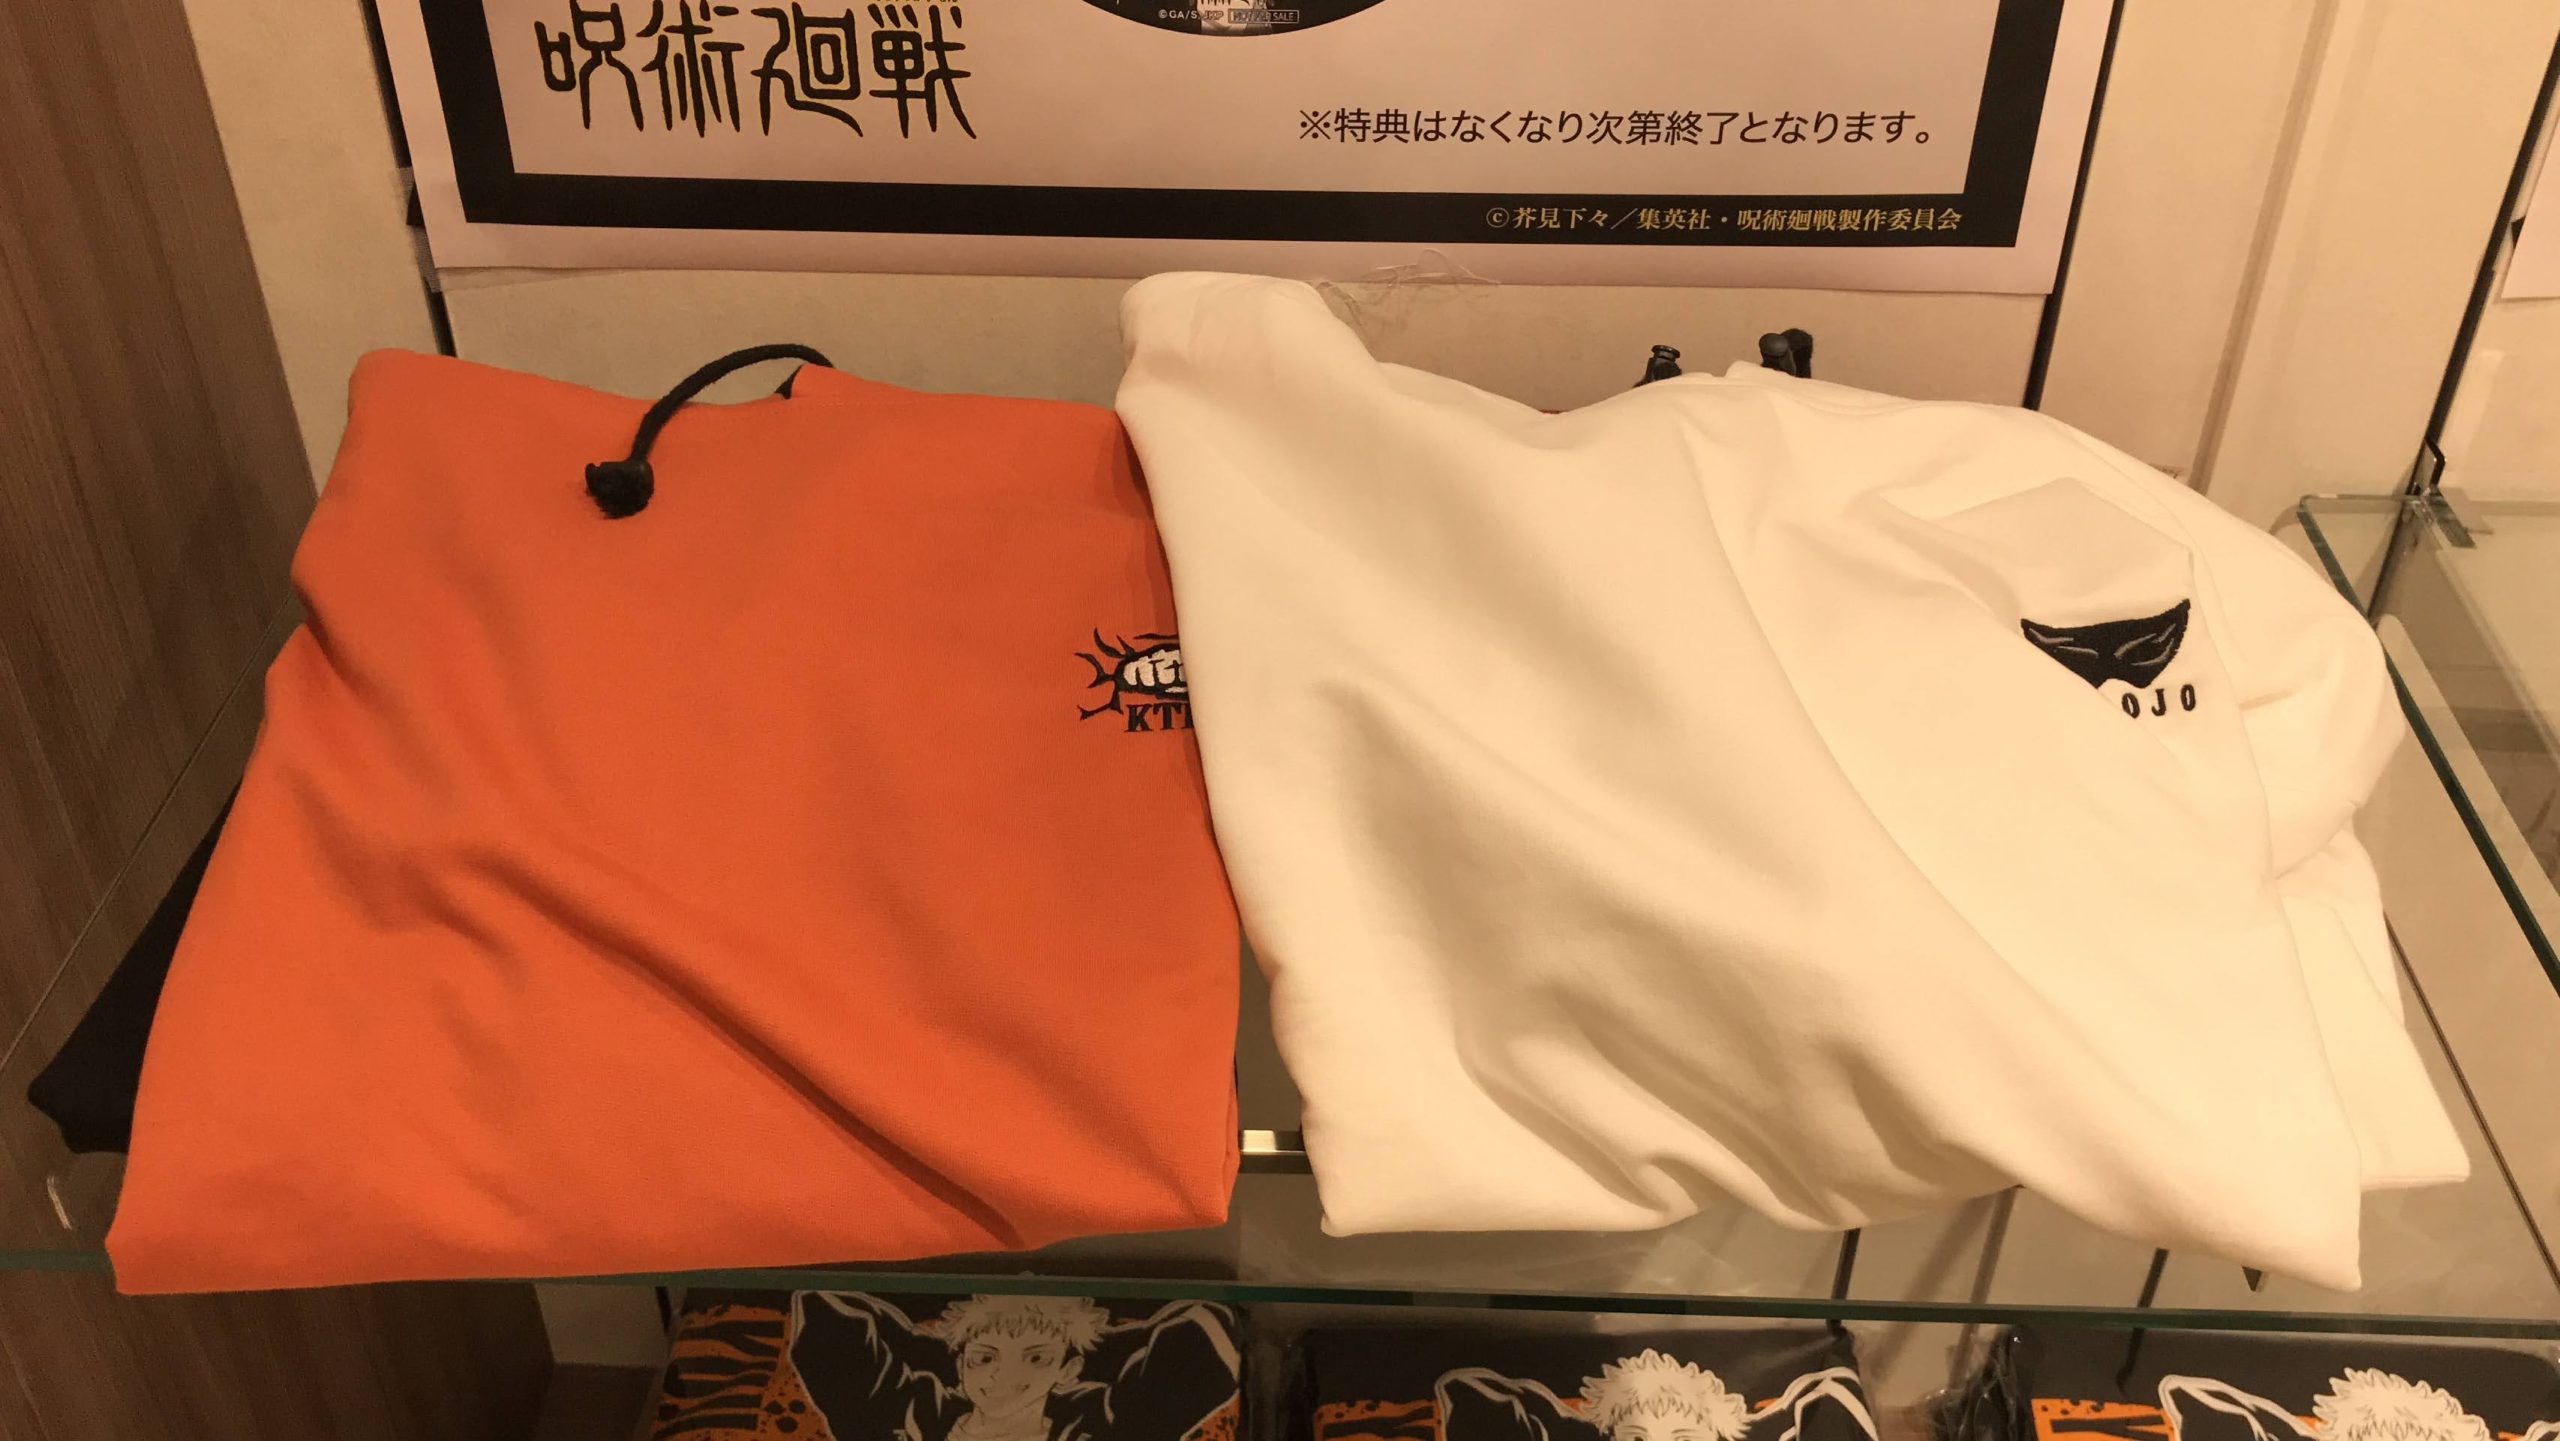 呪術廻戦 limited shop -博多マルイ編-が福岡市で開催。イベント 